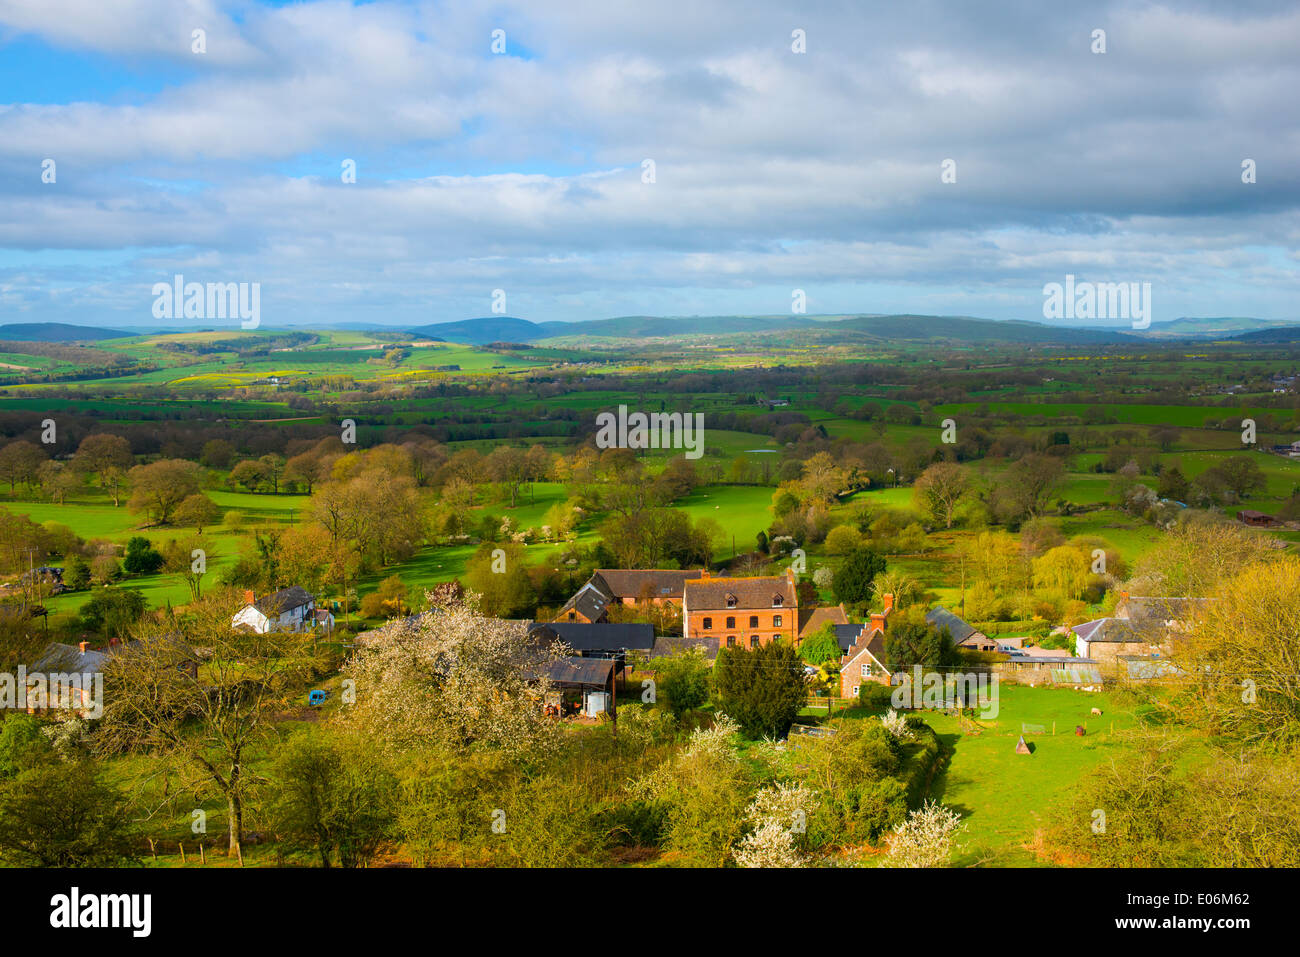 Le village de Asterton dans le ressort de l'Longmynd, Church Stretton, Shropshire, Angleterre. Banque D'Images